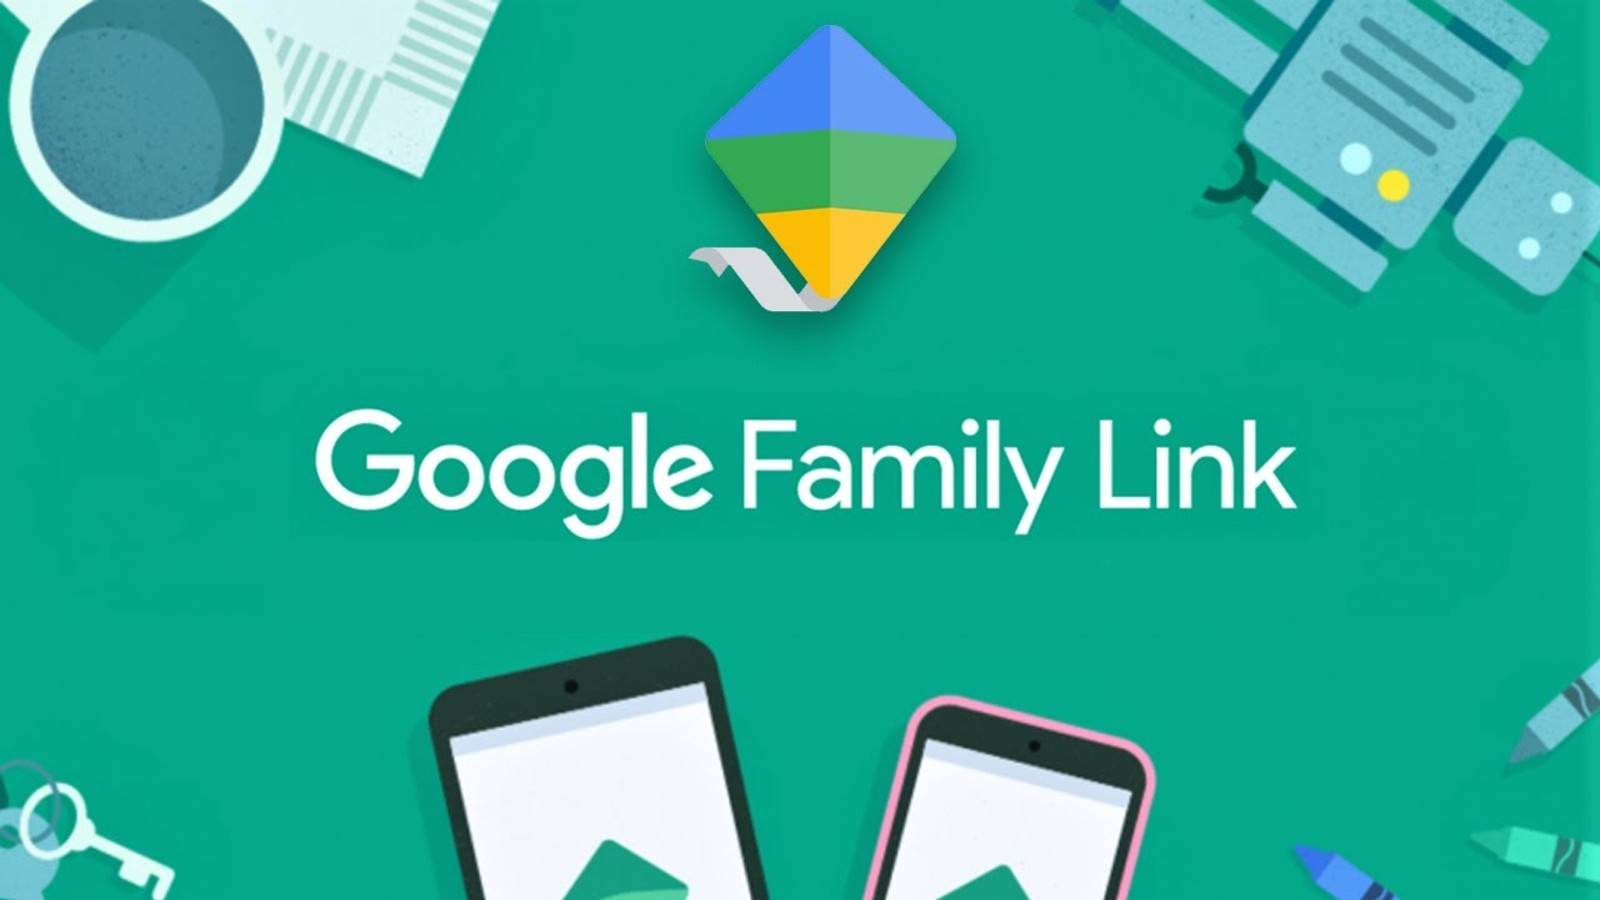 Google family link